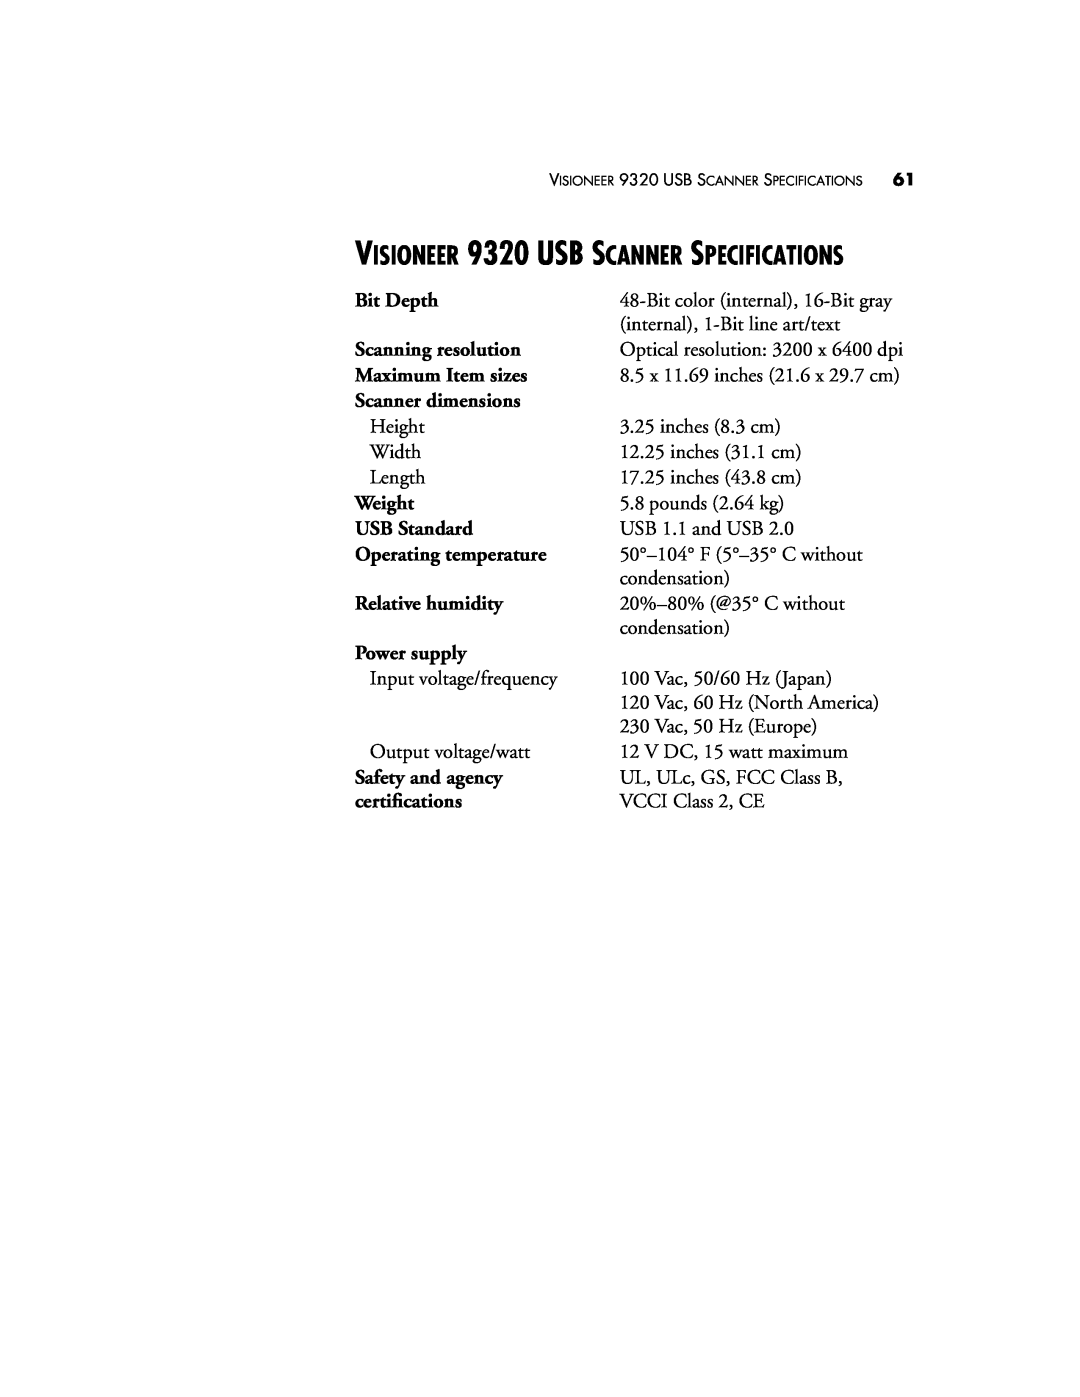 Visioneer manual VISIONEER 9320 USB SCANNER SPECIFICATIONS 